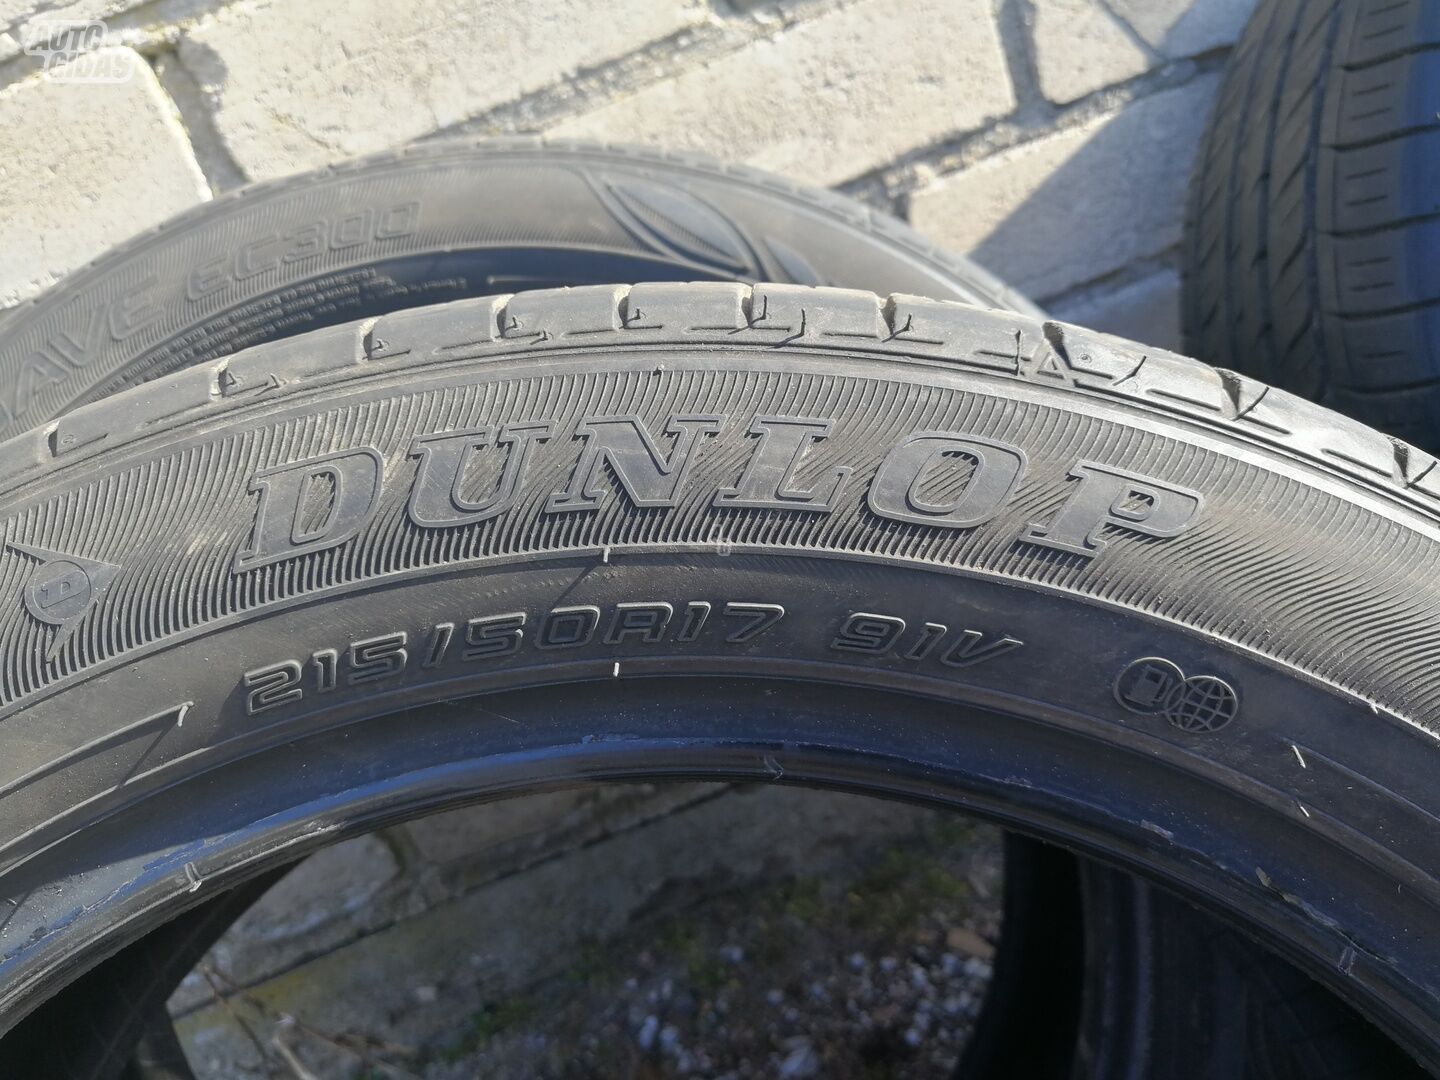 Dunlop R17 summer tyres passanger car